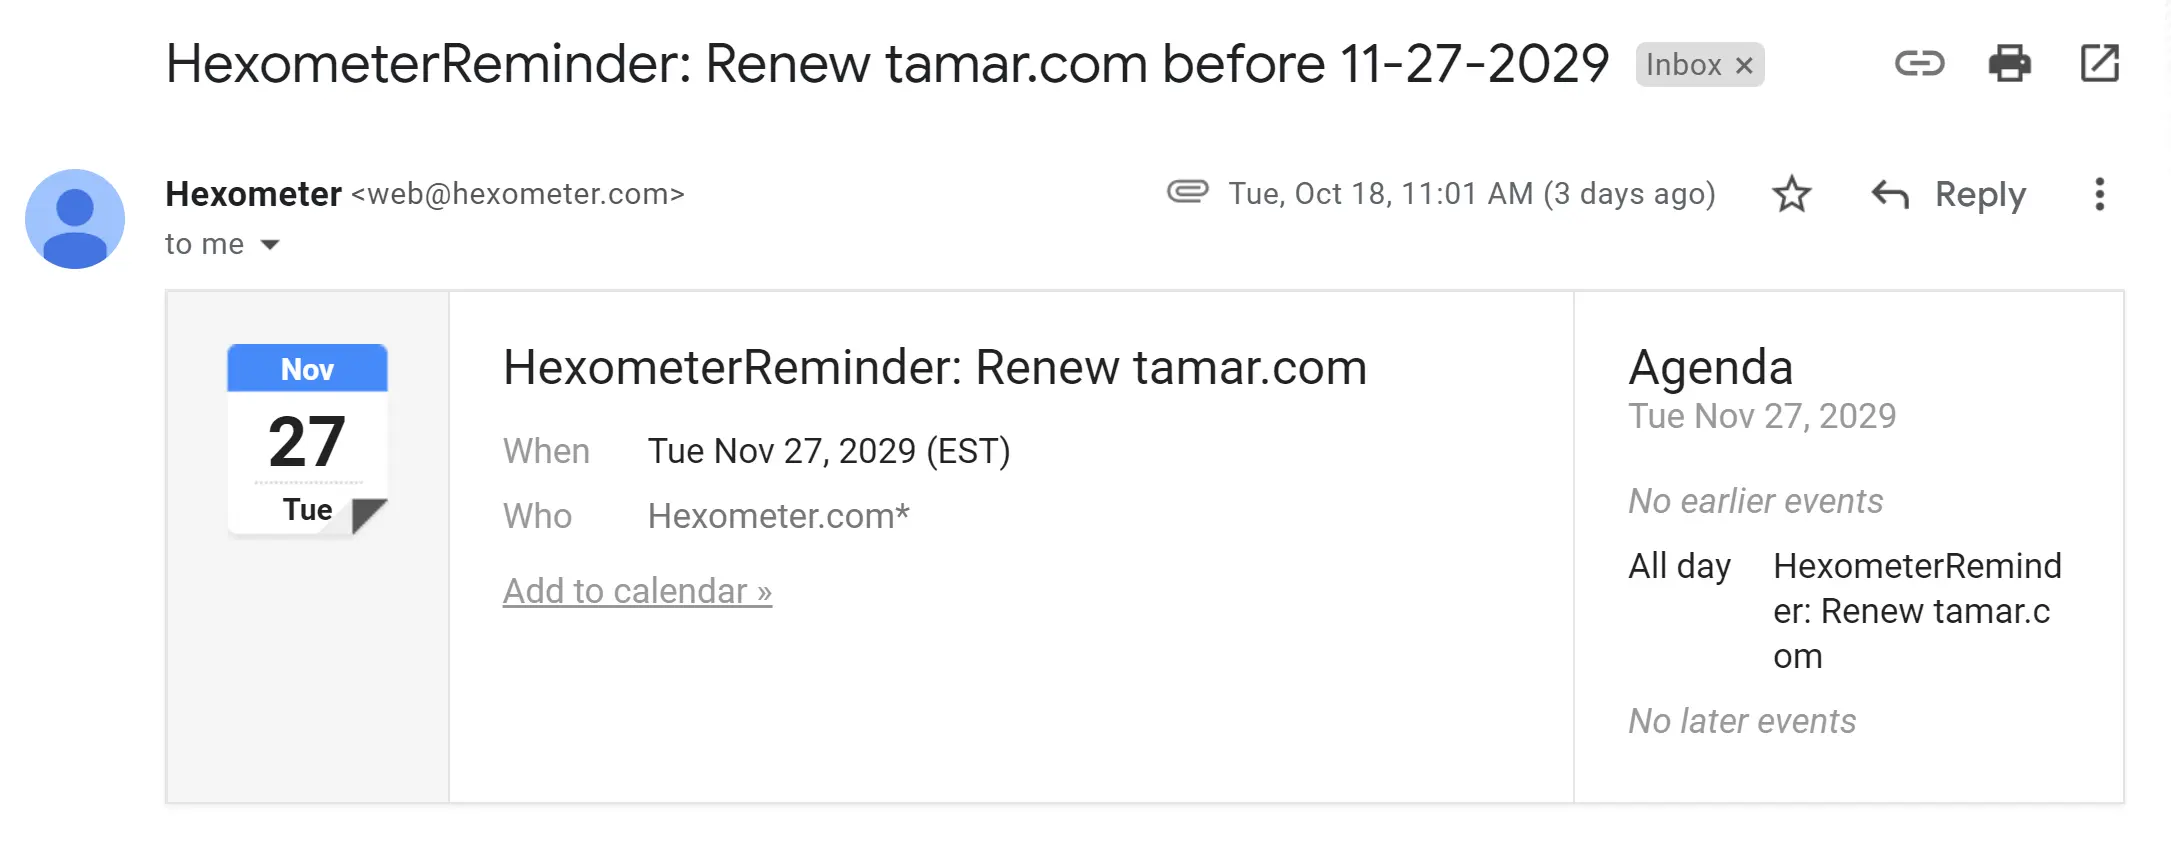 Hexometer renewal email